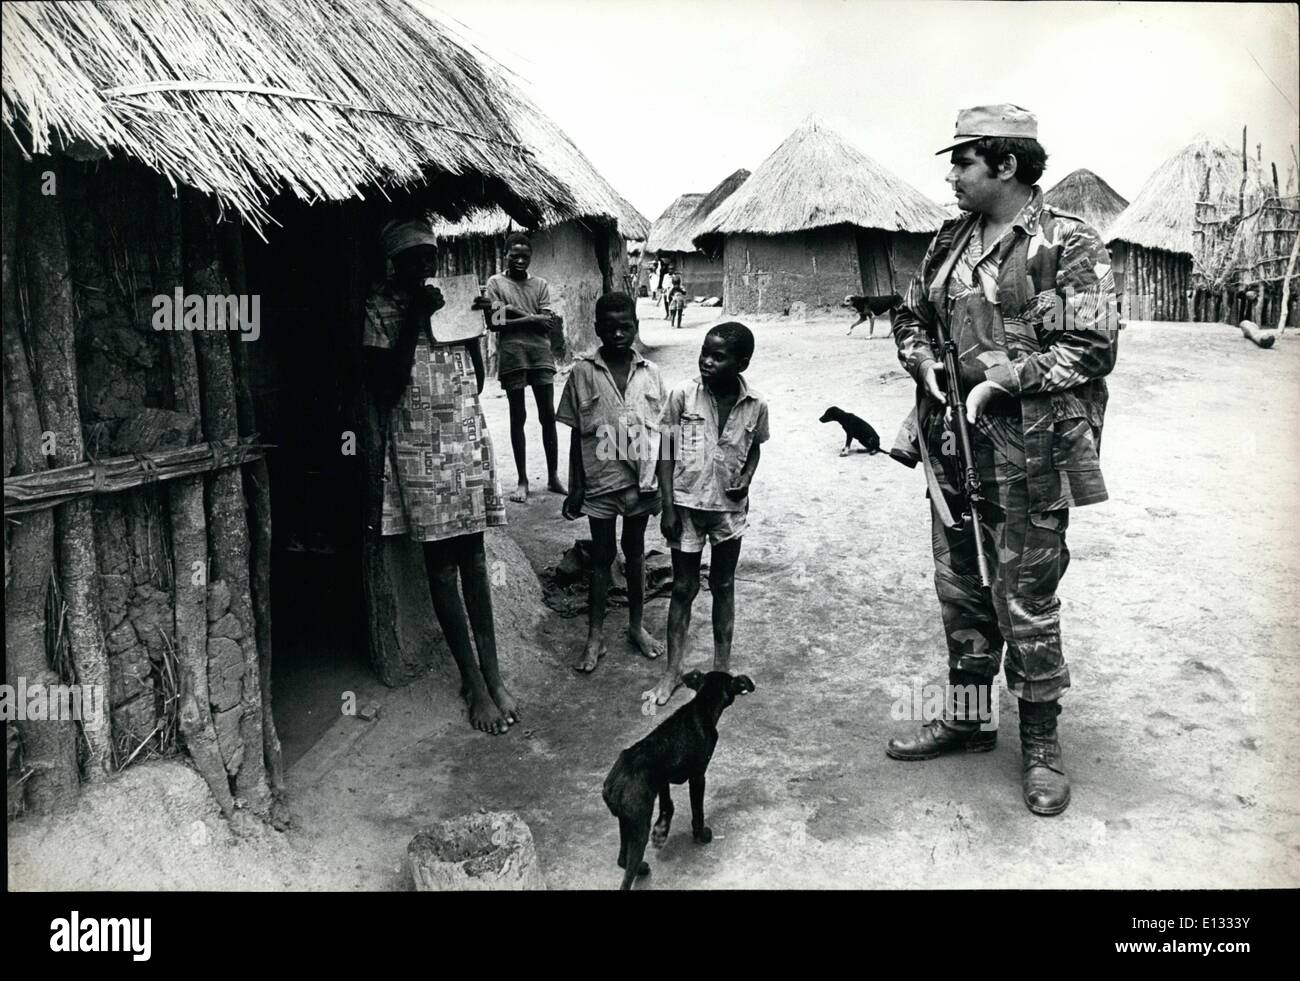 Febrero 26, 2012 - Rhodesia: un sudafricano blanco, quien se unió a las patrullas del ejército de Rhodesia voluntariamente un Ã¢â'¬Ëoeprotected village' en el campamento 7, ubicado a 6 millas al sur del monte Darwin en Rhodesia. Hay varios cientos de familias africanas en este municipio. El soldado en la imagen dijo que la mayoría de la gente siente que vive en cagesÃ Foto de stock